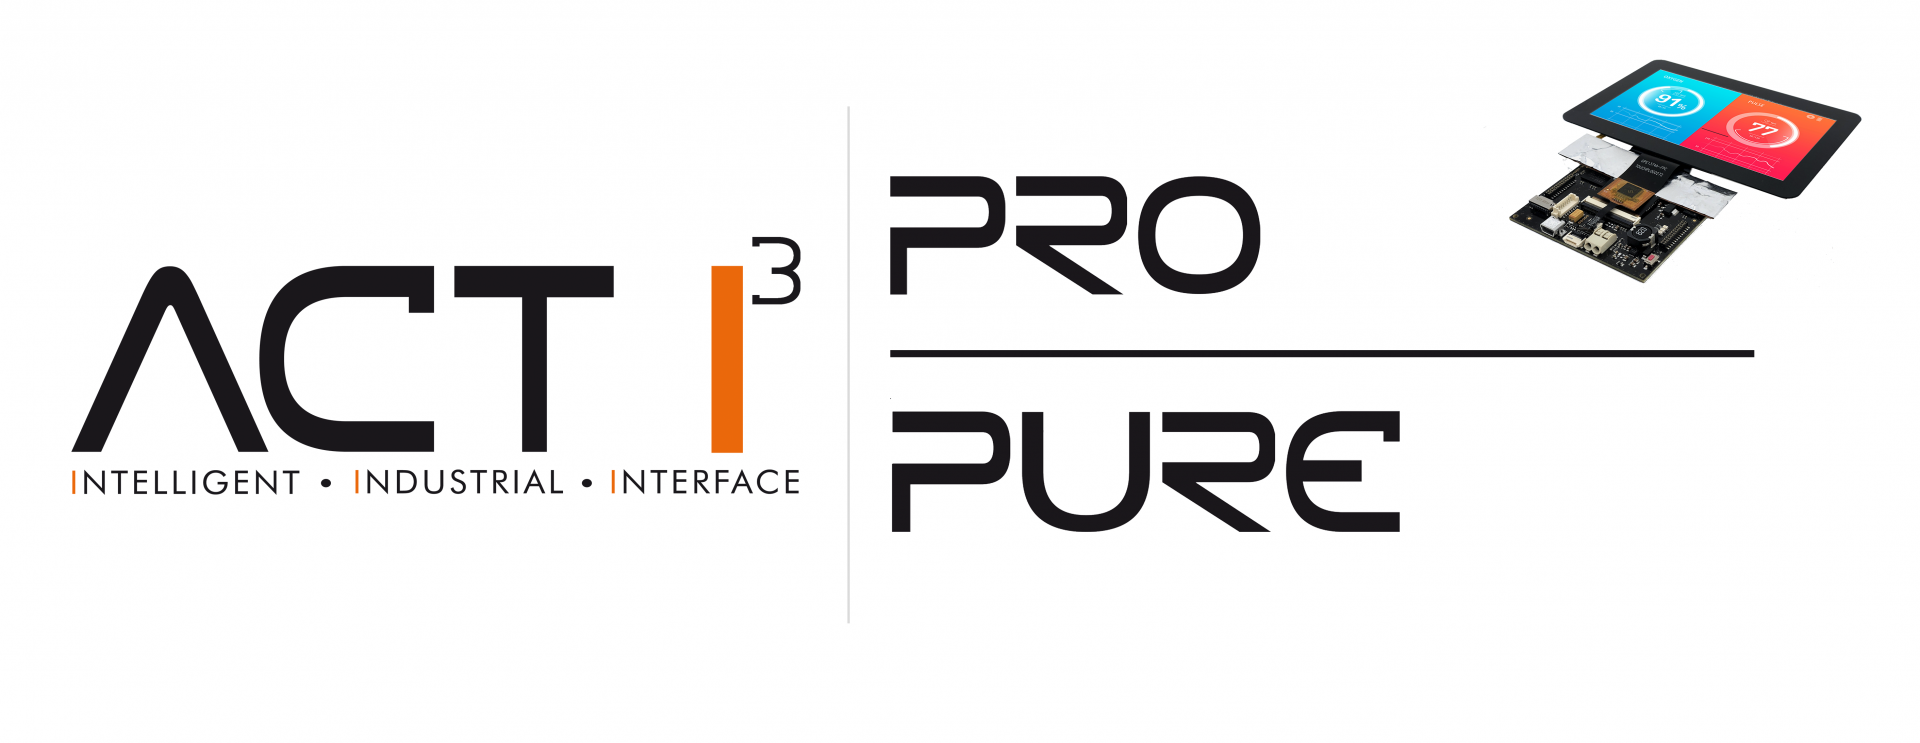 ACT I³ Pure Pro